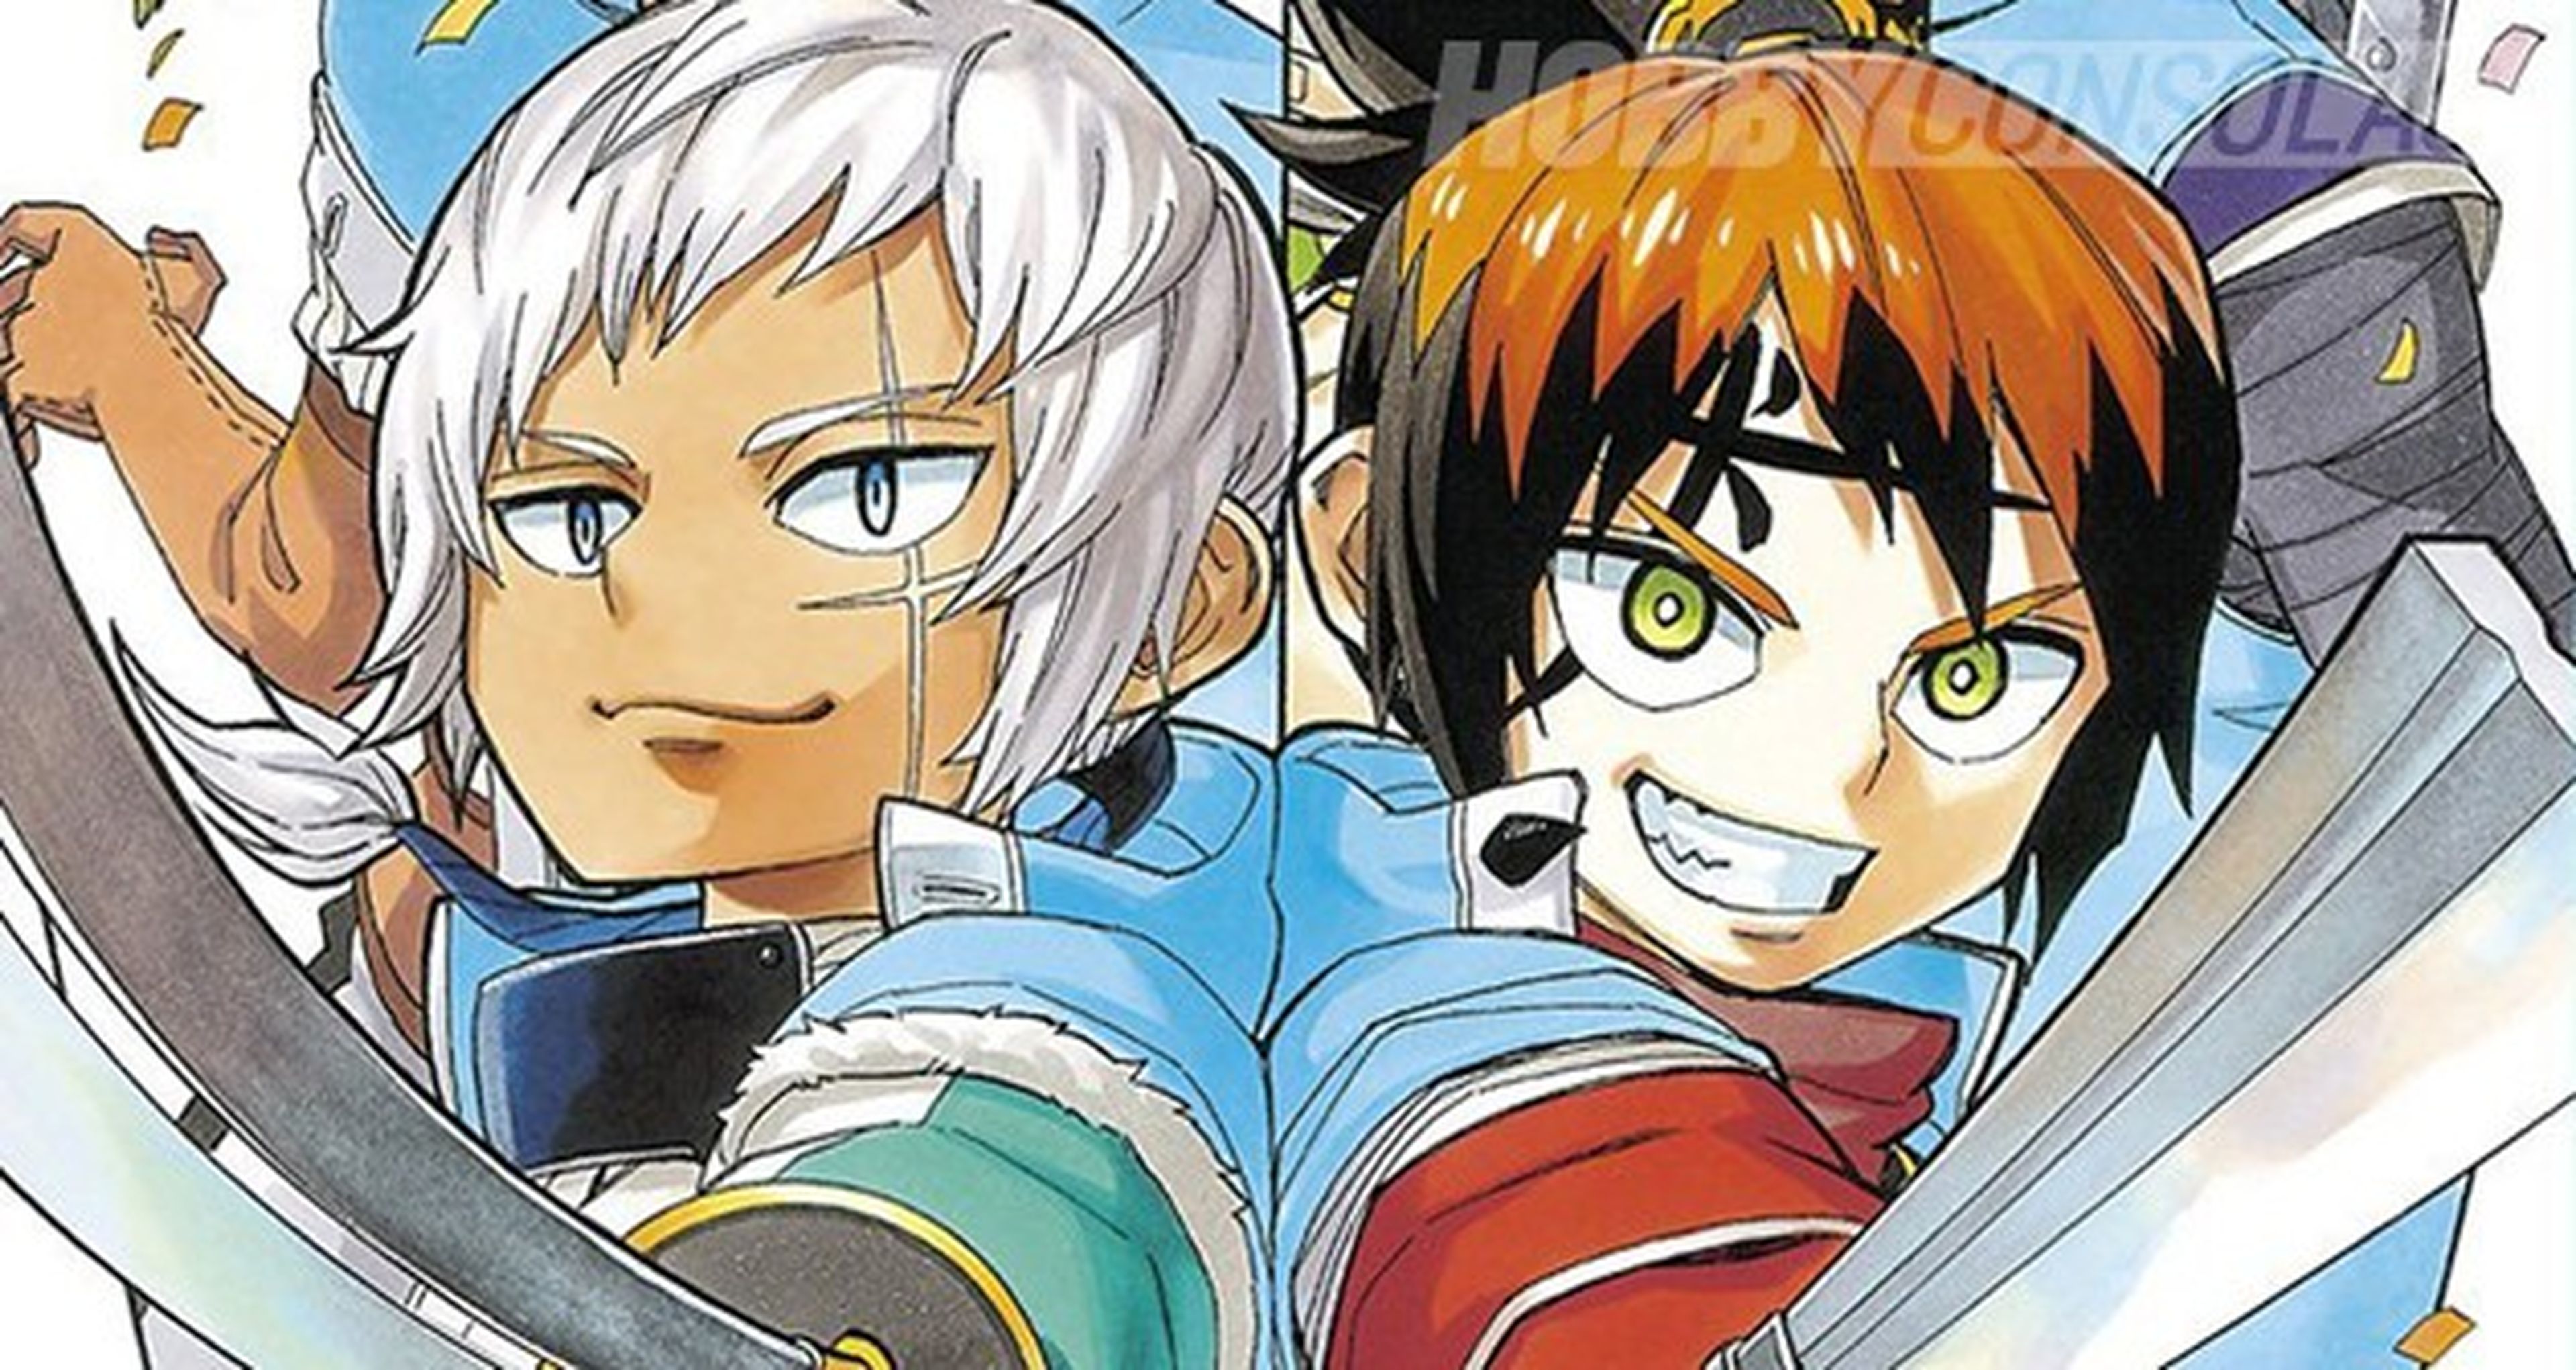 Yoakemono, nuevo manga que llega en septiembre